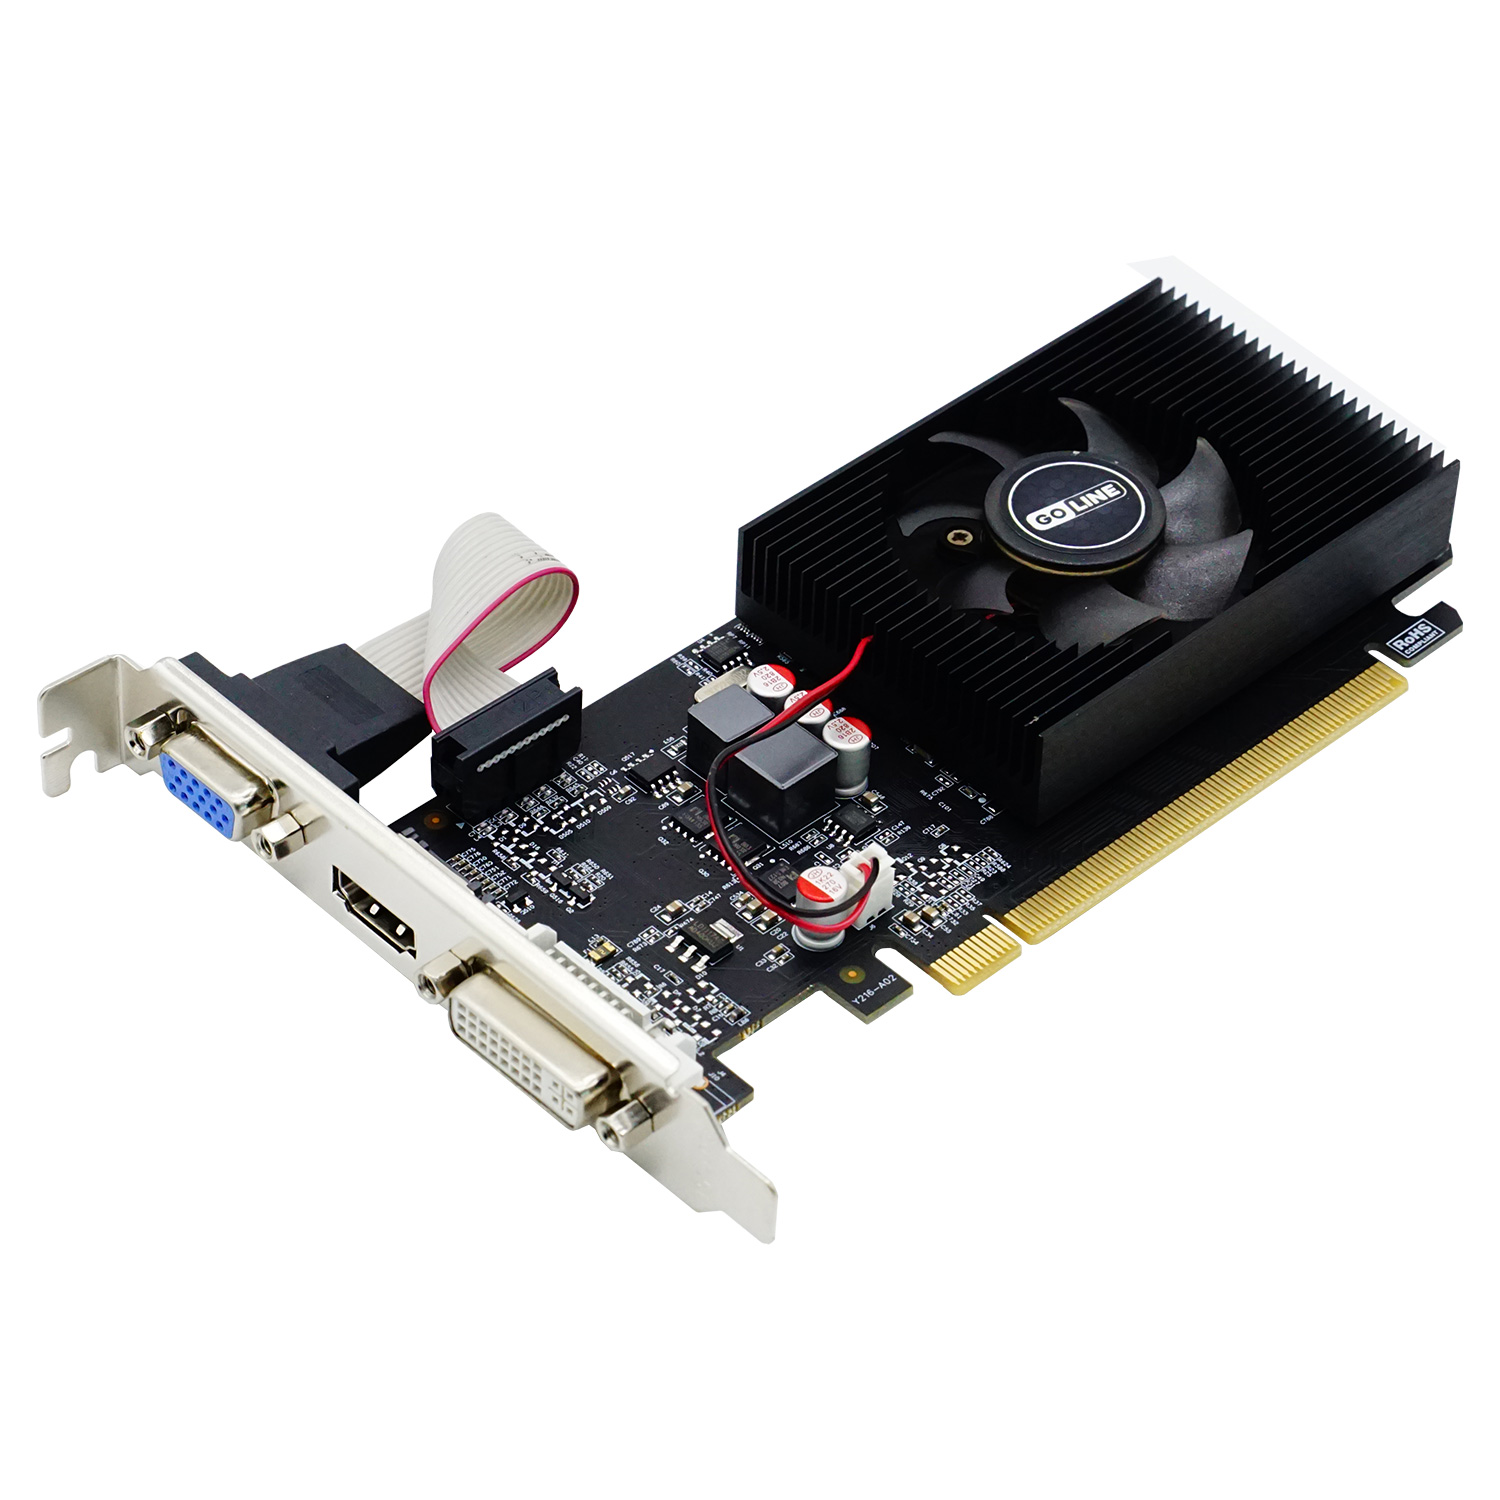 Placa de Vídeo Goline NVIDIA GeForce GL-GT220 1GB DDR3 - GL-GT220-1GB-D3 (1 Ano de Garantia)